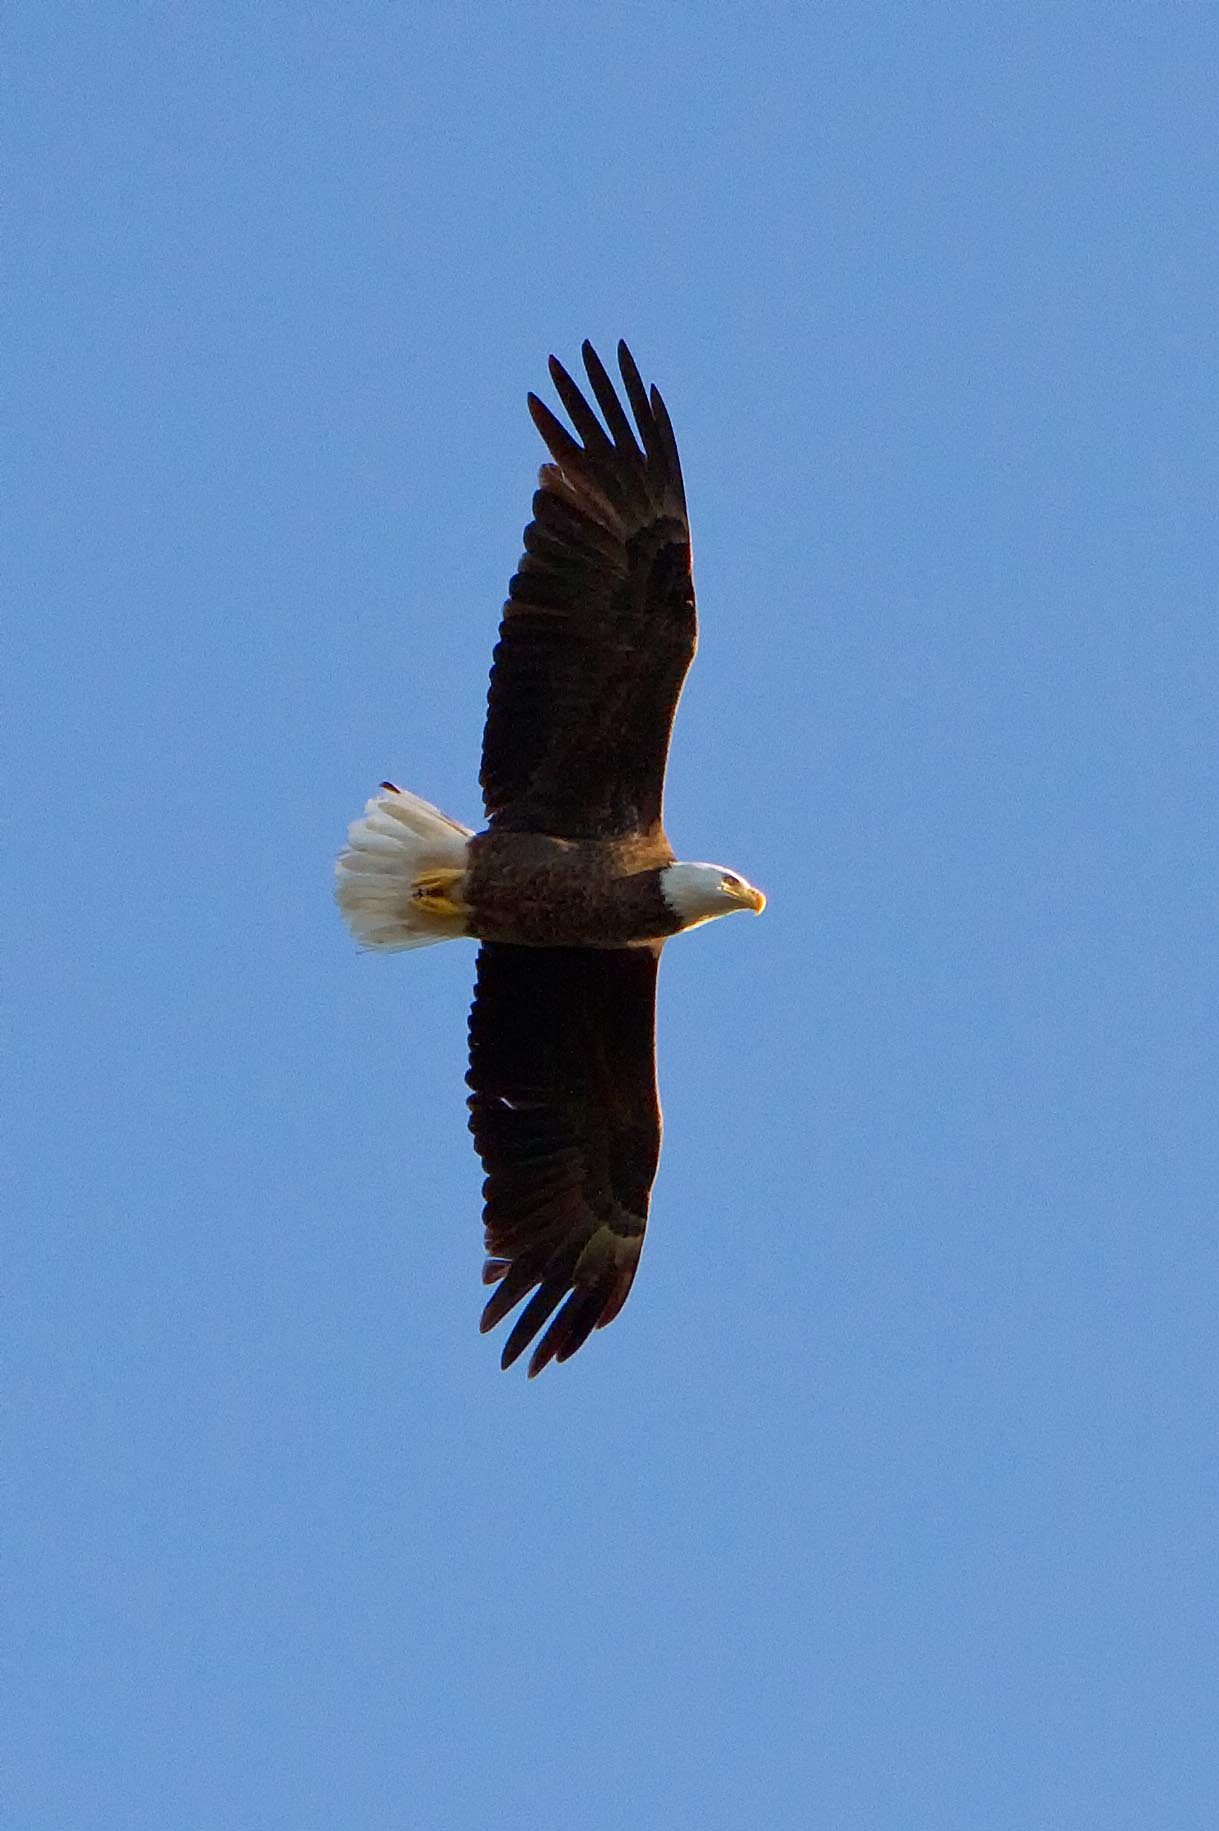 Male Eagle In Flight